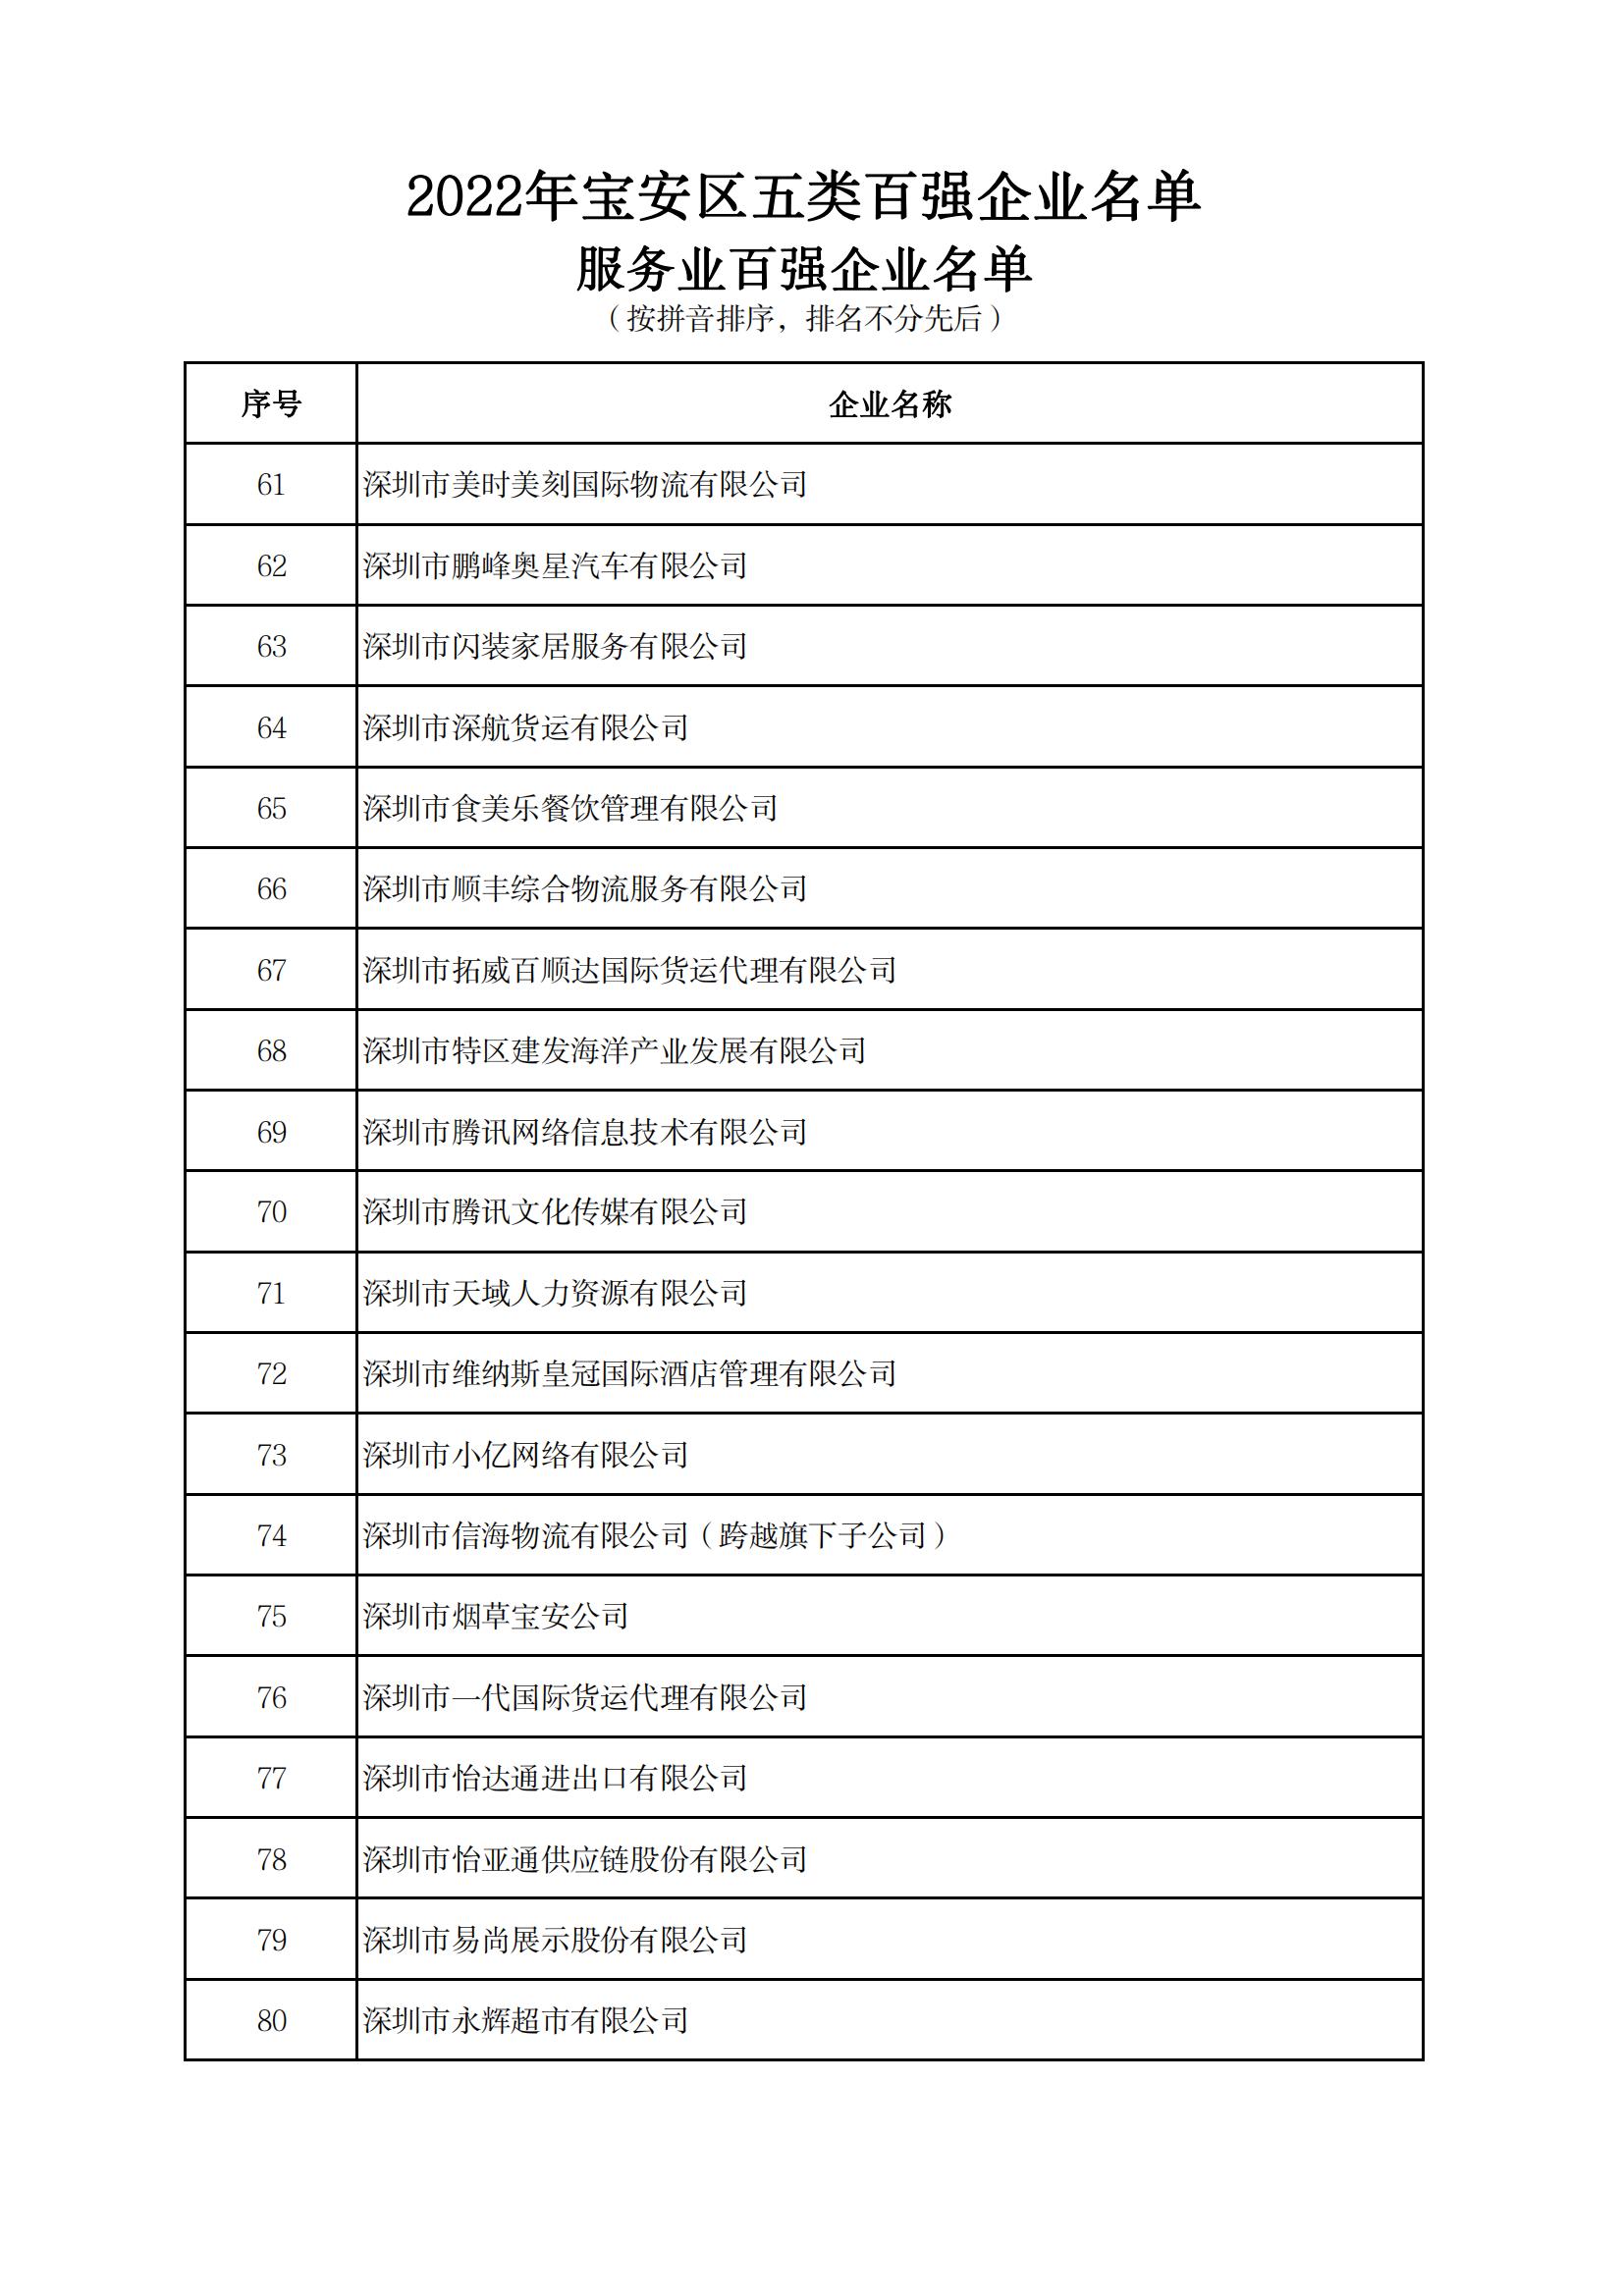 附件：2022年宝安区五类百强企业名单_13.jpg